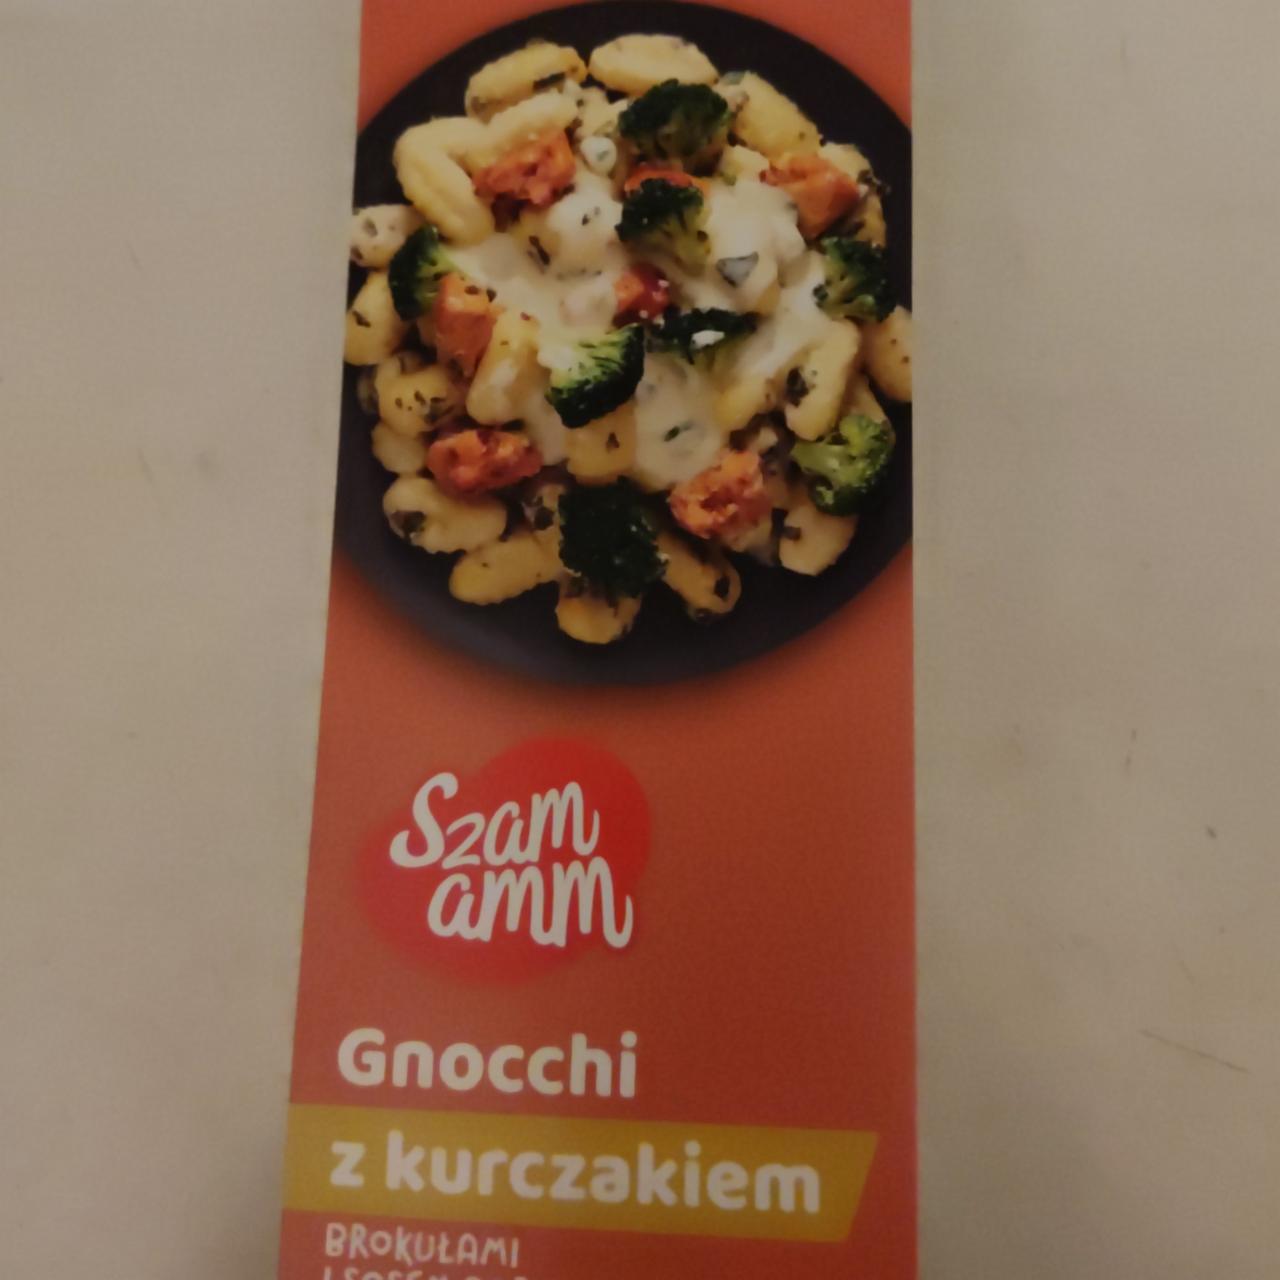 Zdjęcia - Gnocchi z kurczakiem szam amm